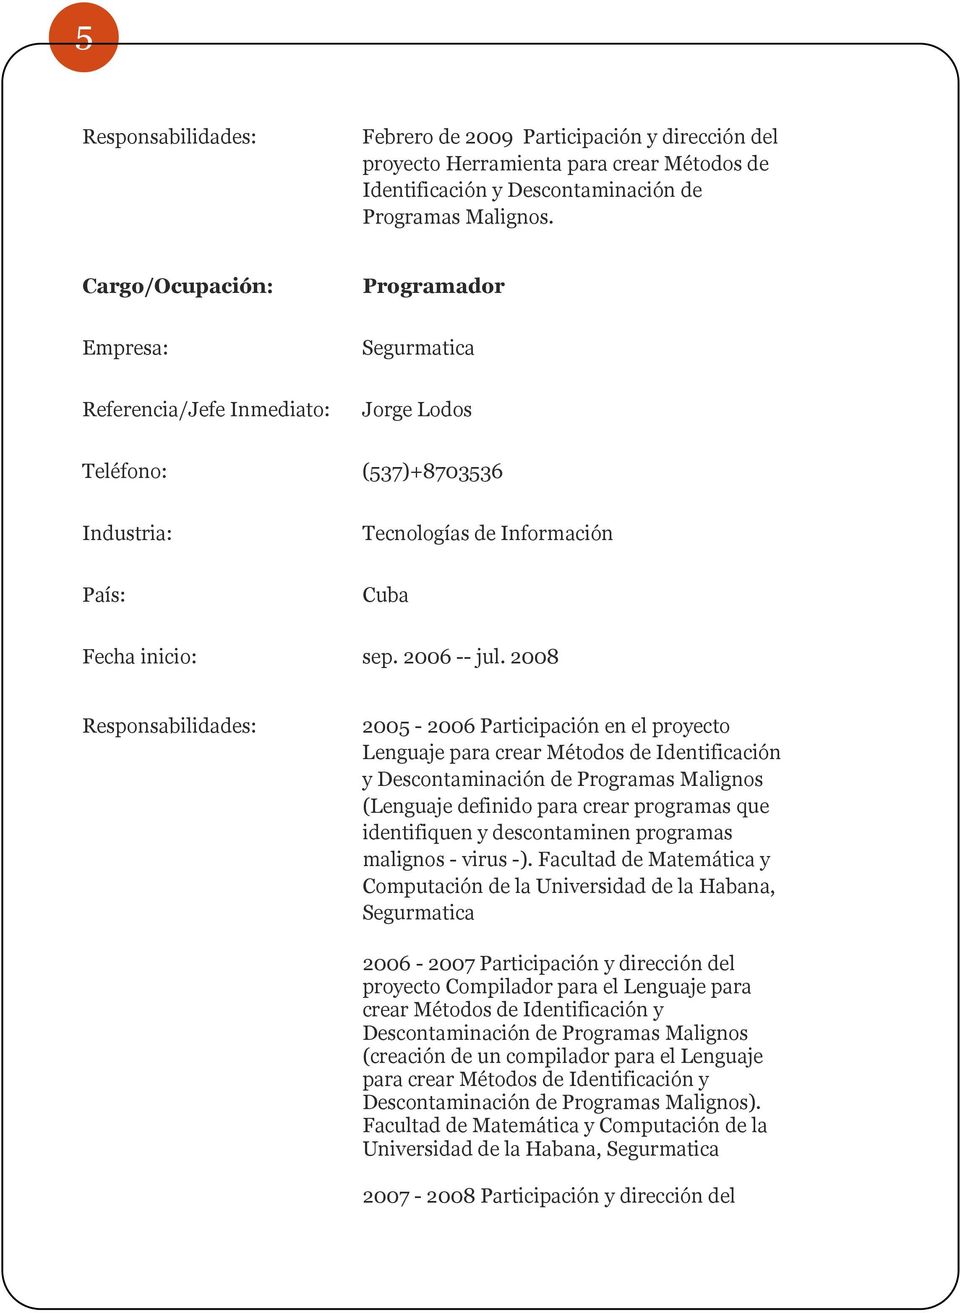 2008 Responsabilidades: 2005-2006 Participación en el proyecto Lenguaje para crear Métodos de Identificación y Descontaminación de Programas Malignos (Lenguaje definido para crear programas que